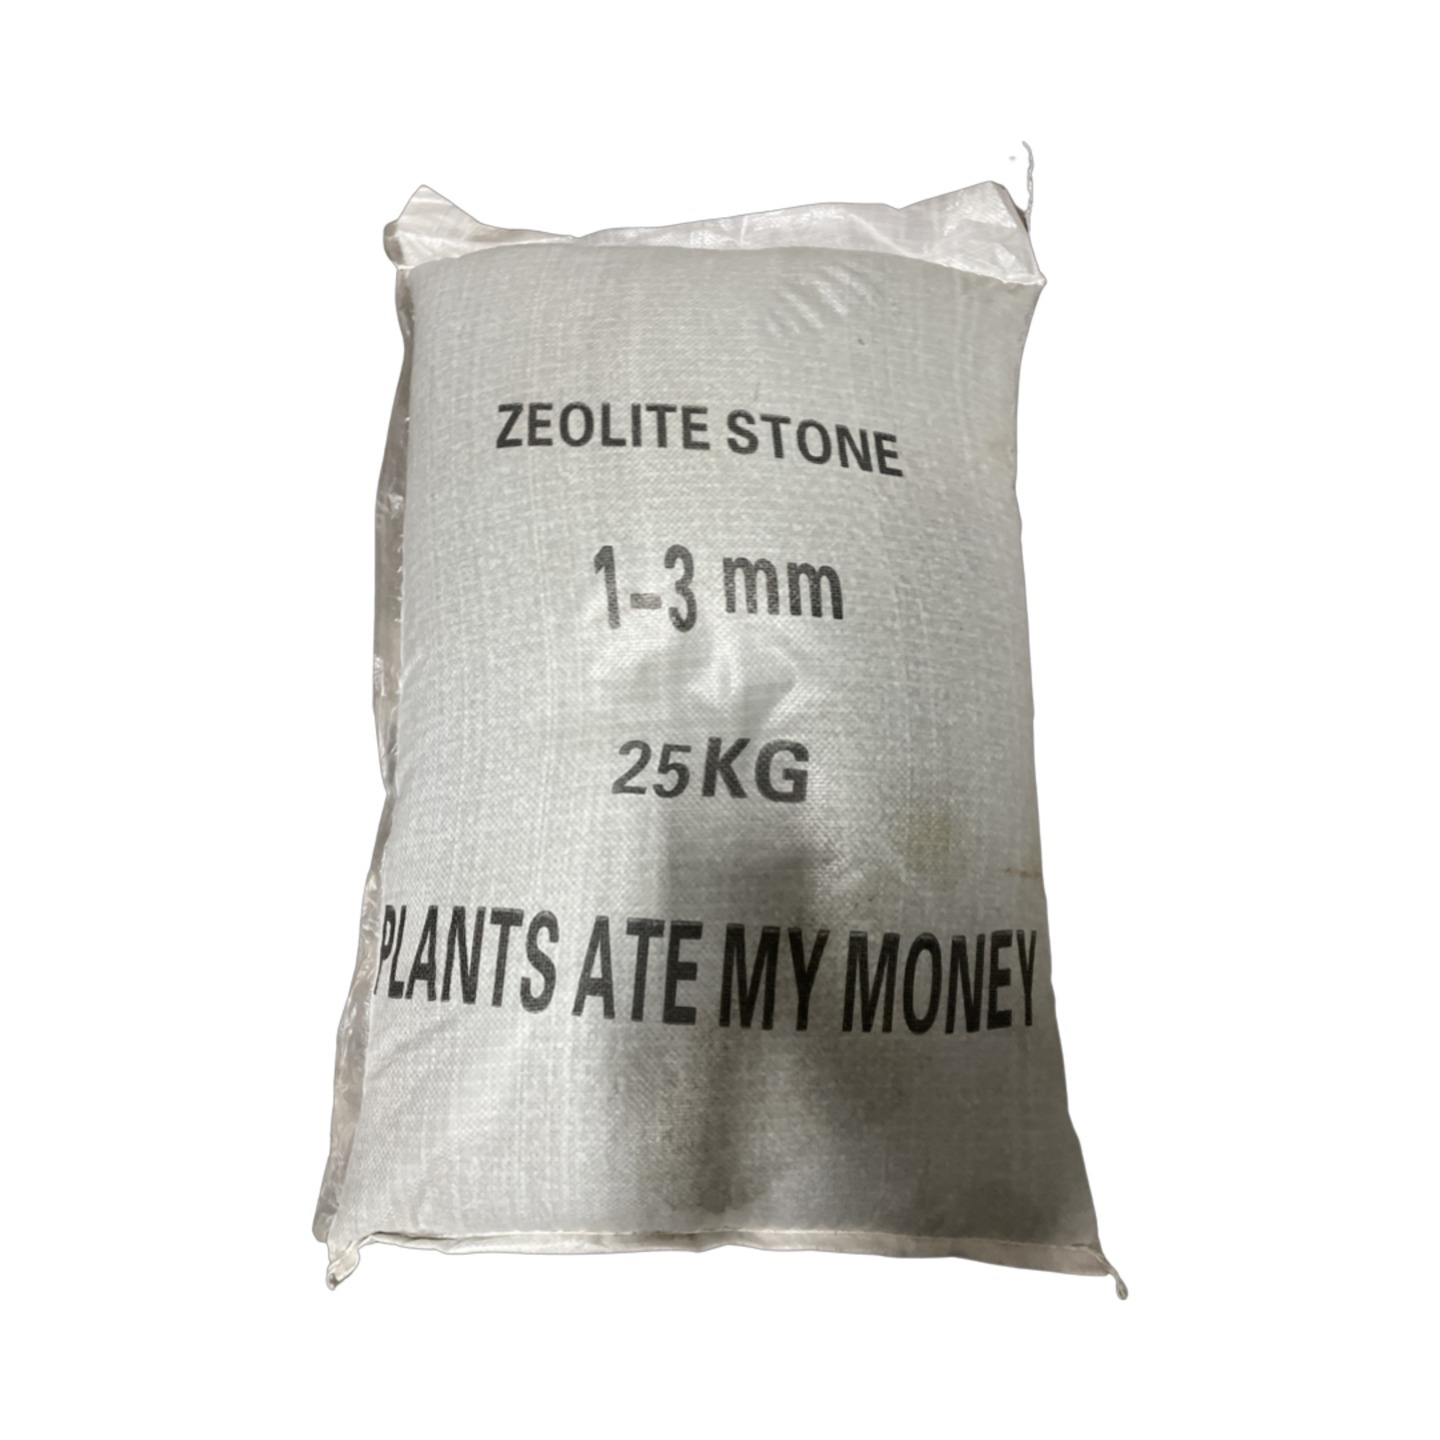 Zeolite Stone 25Kg